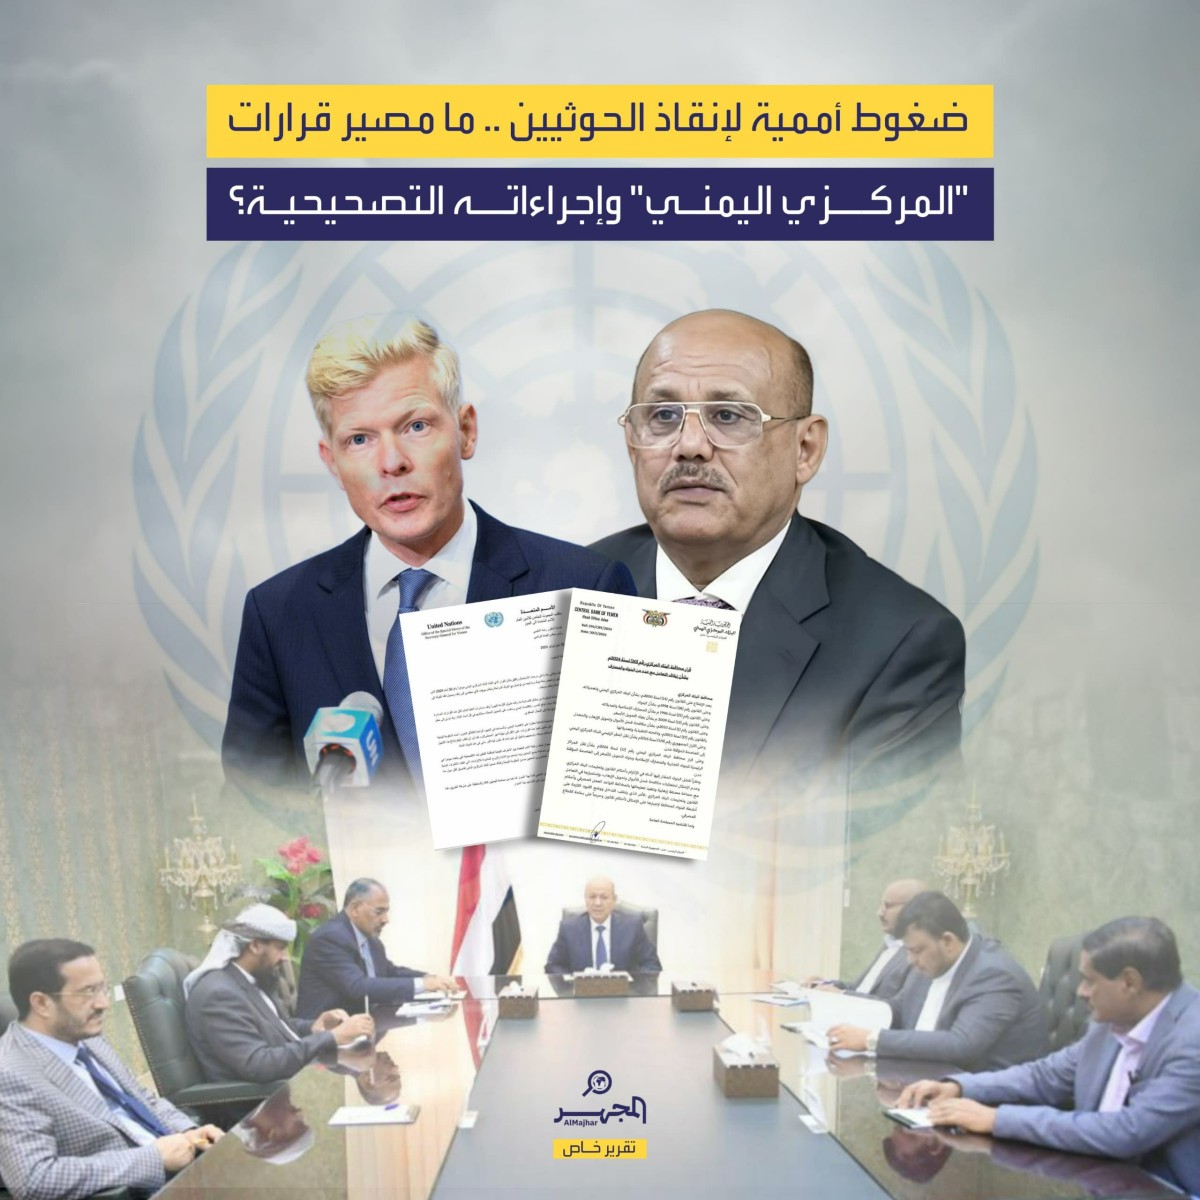 ضغوط أممية لإنقاذ الحوثيين.. ما مصير قرارات "المركزي اليمني" وإجراءاته التصحيحية؟ (تقرير خاص)